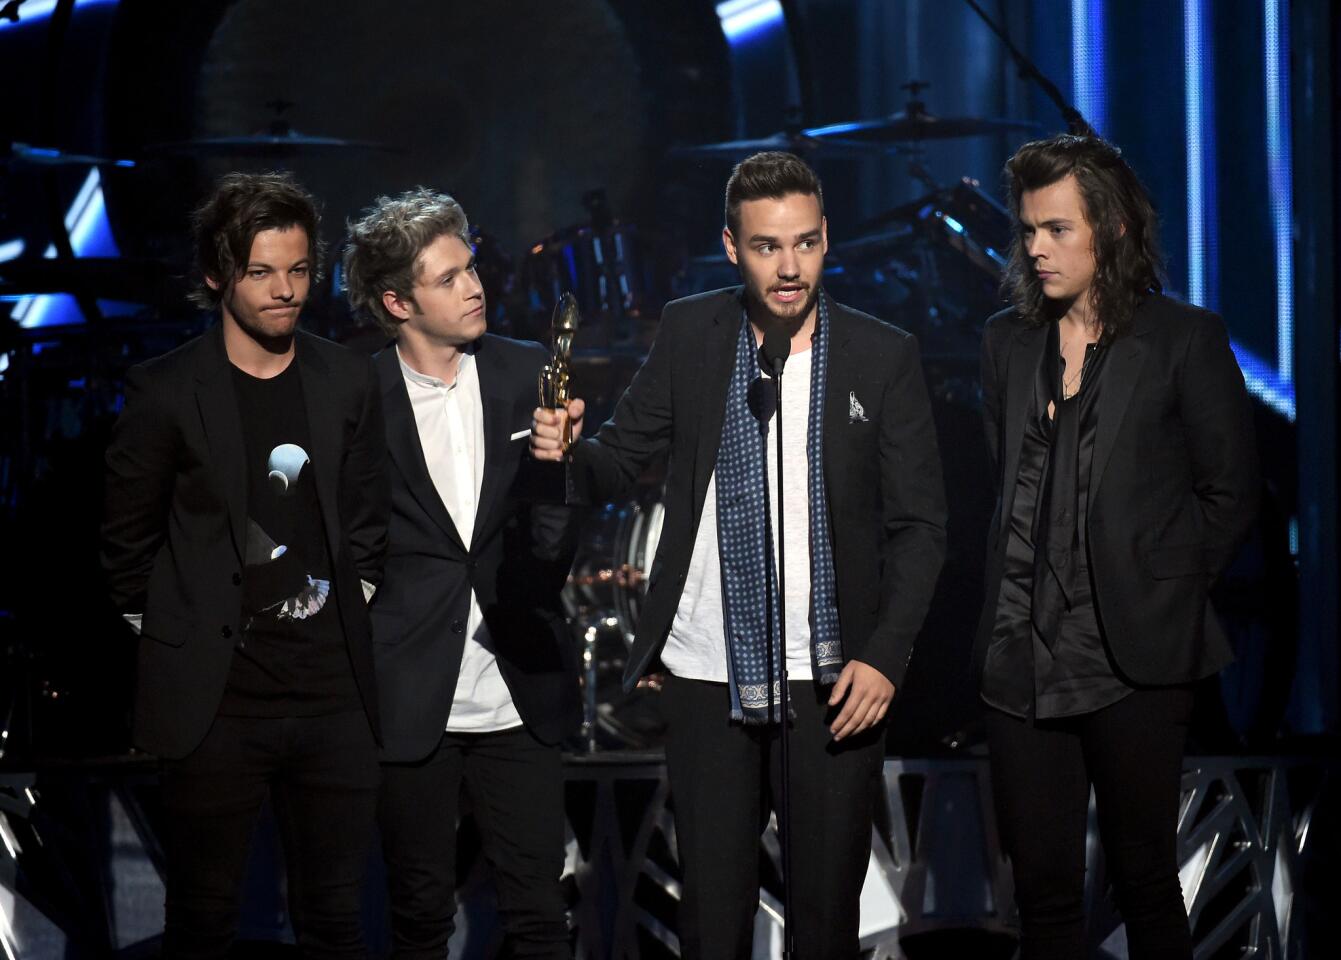 Billboard Music Awards 2015 highlights